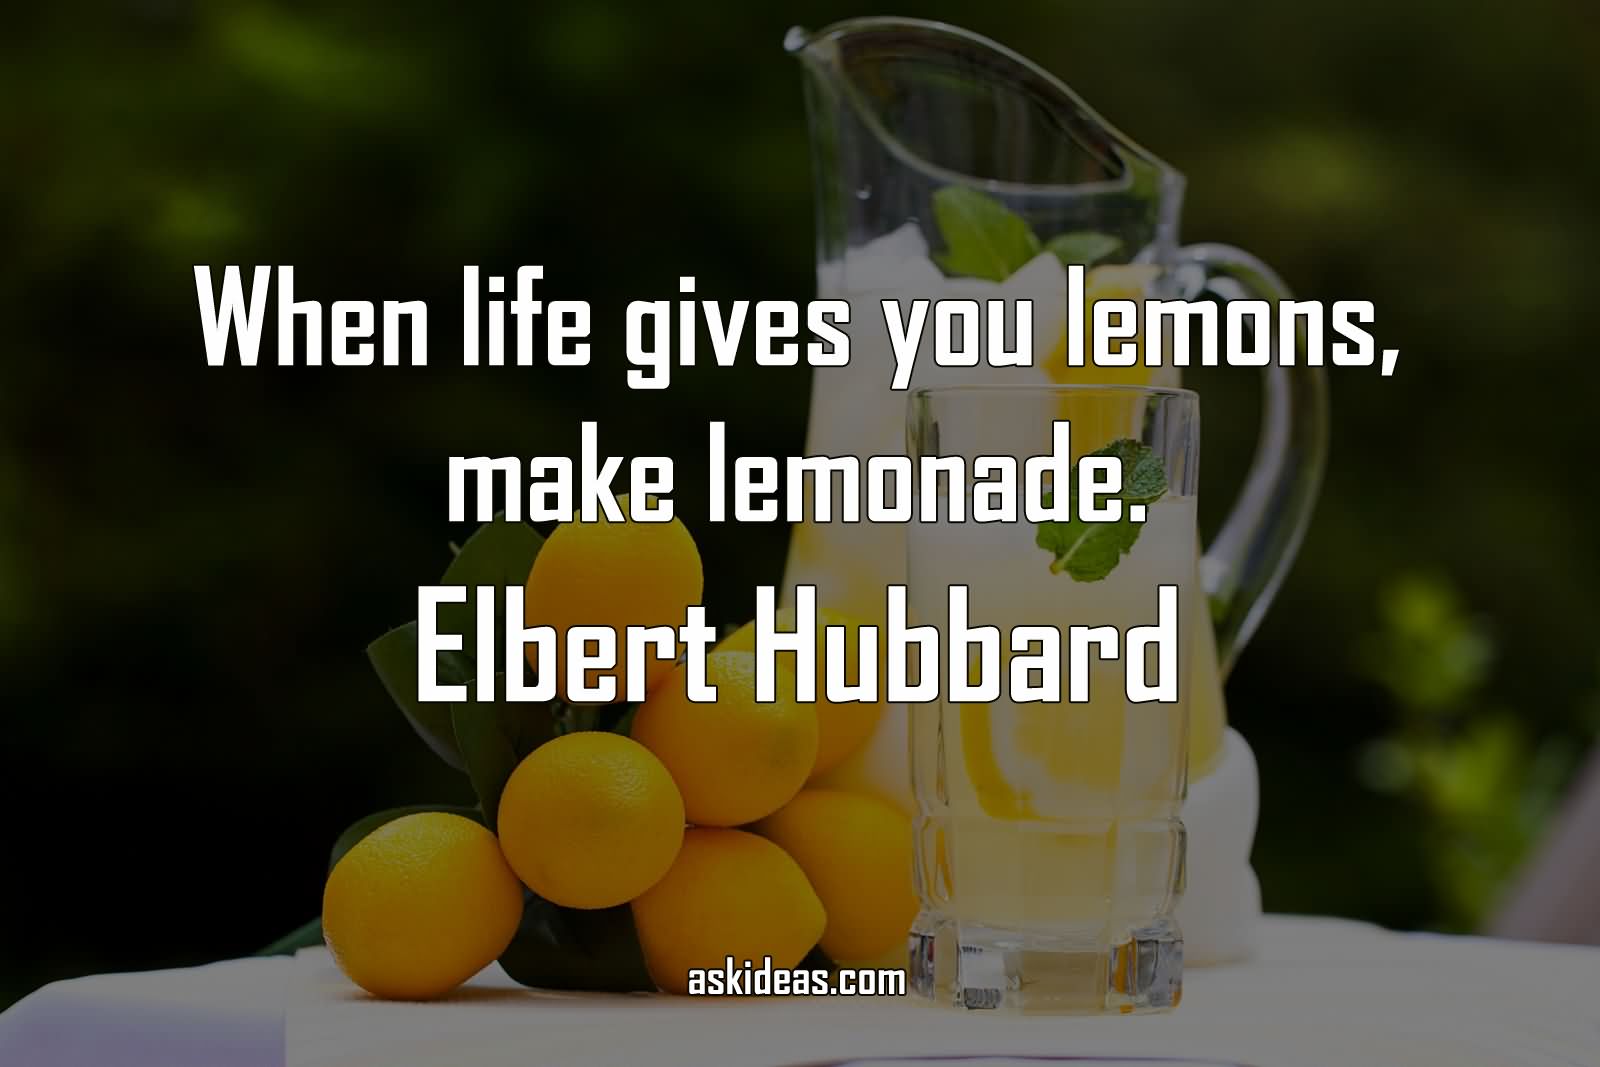 When life gives you lemons, make lemonade.